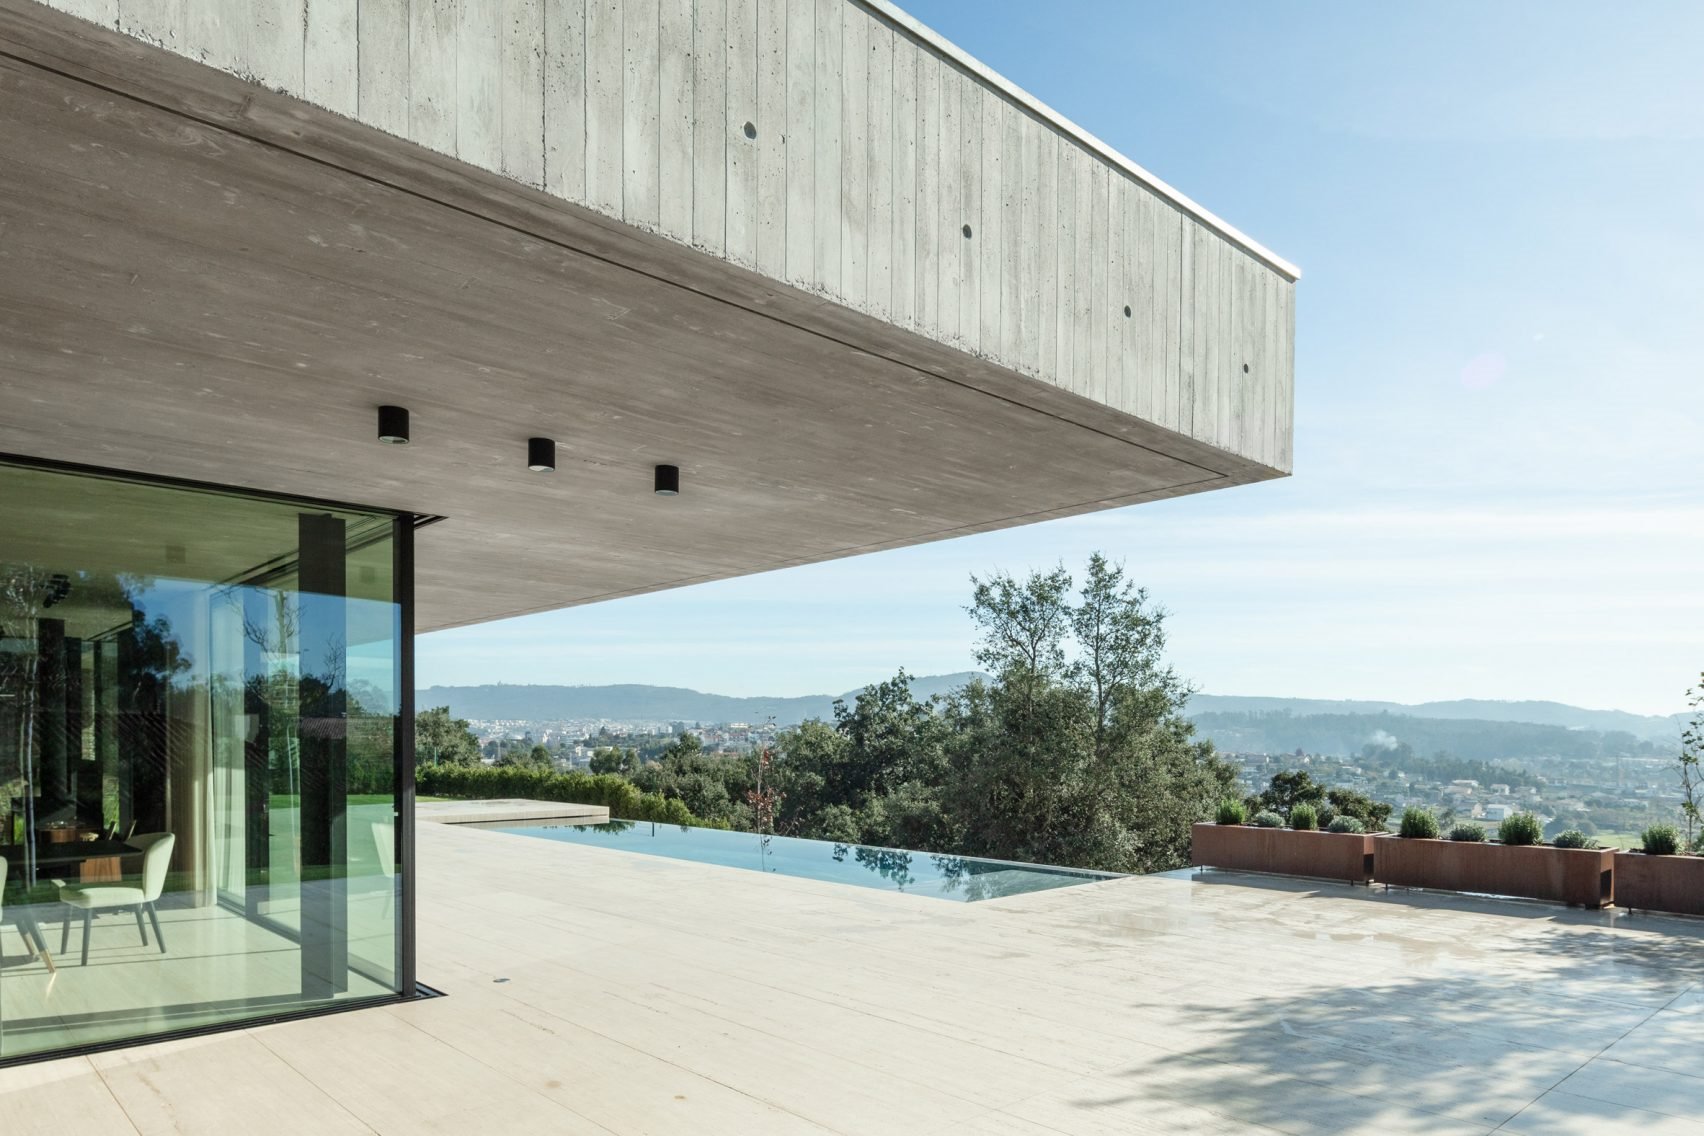 Casa moderna de hormigon en Braga con piscina